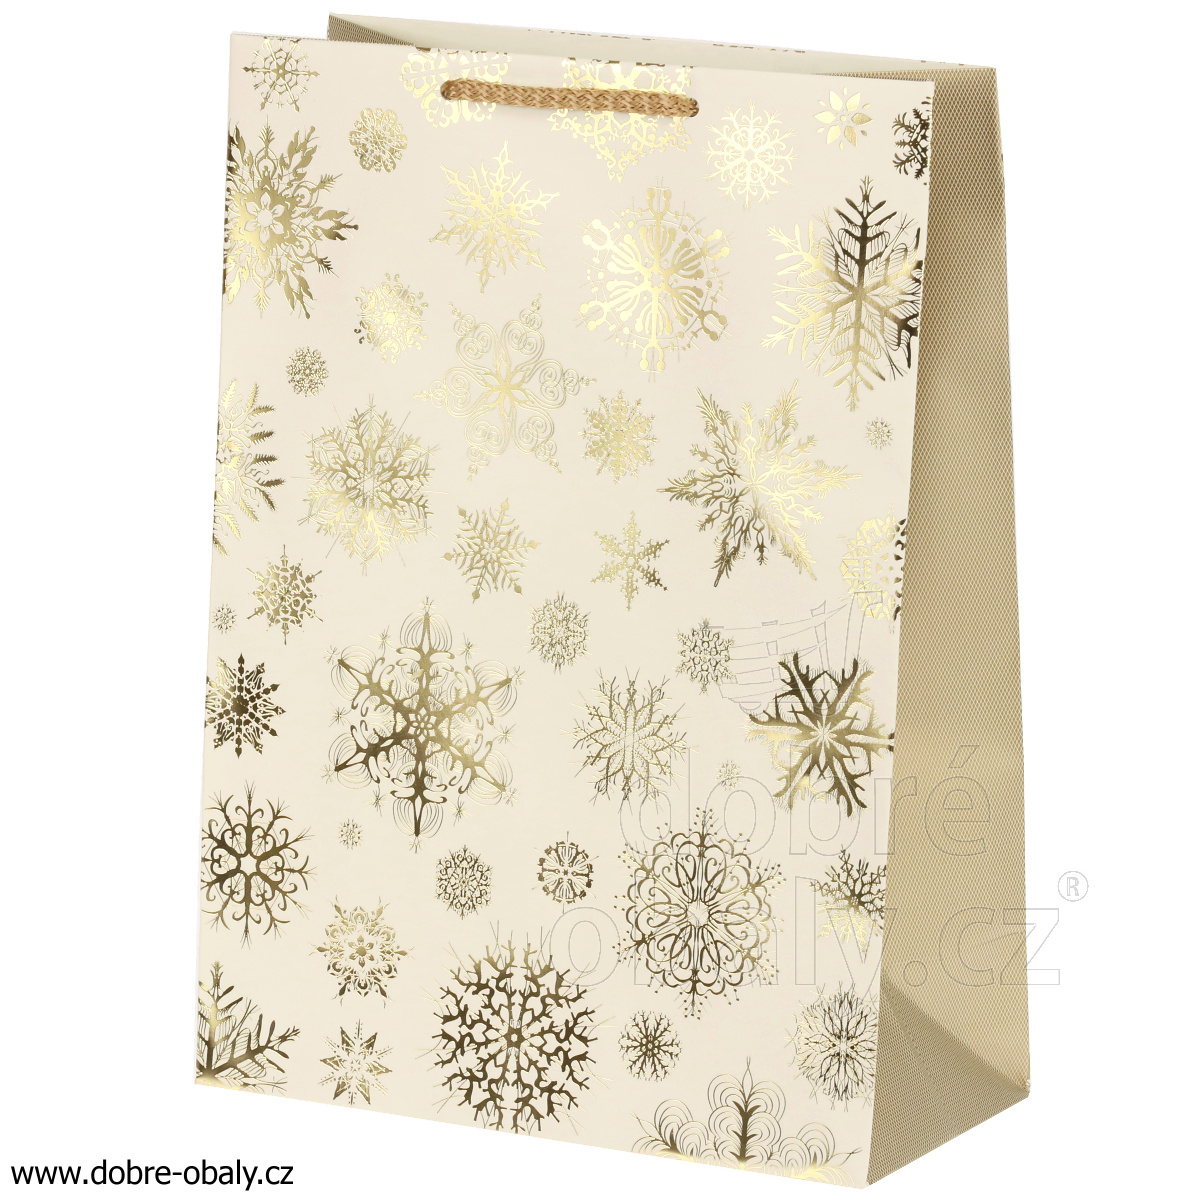 Vánoční papírová taška L LUX - KRÉMOVÁ vločky 48627, výhodné balení